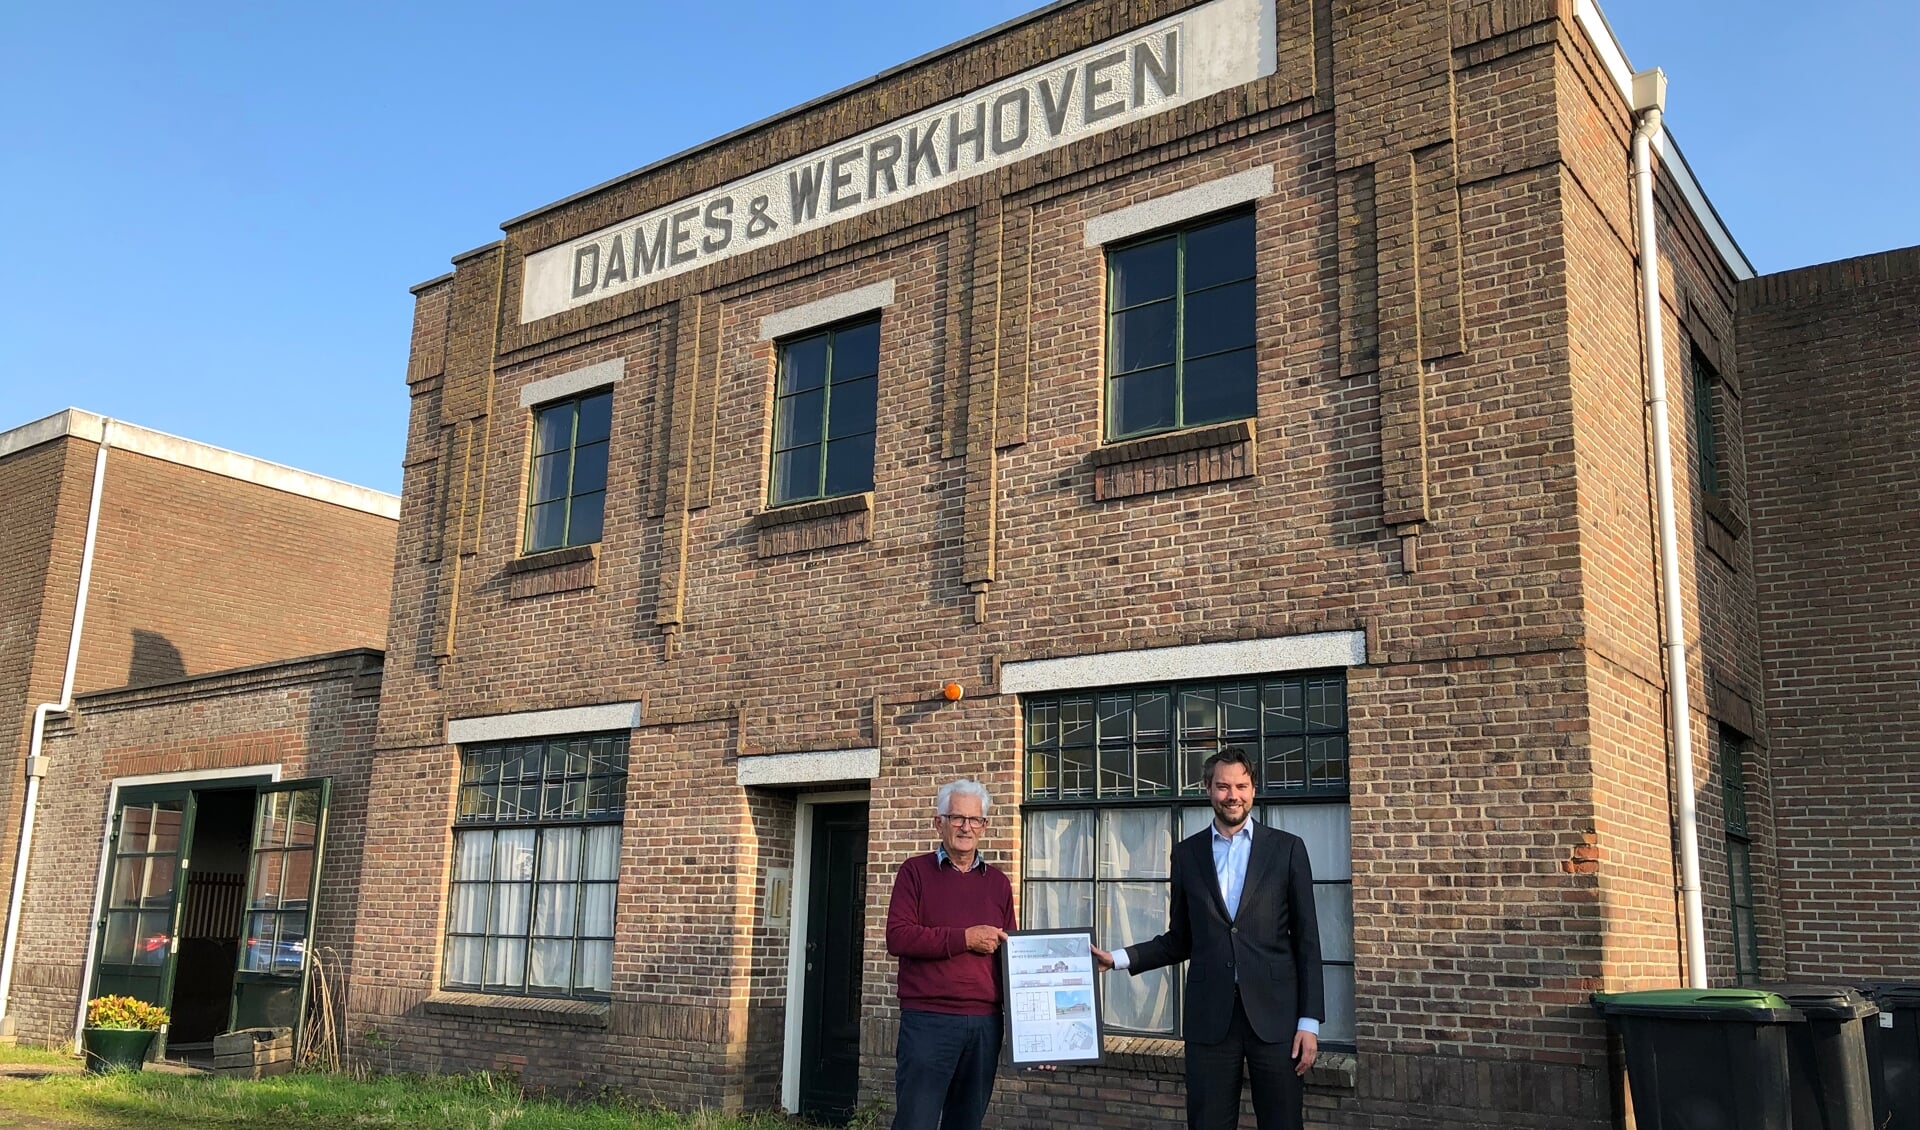 Een iconische bollenschuur wordt getransformeerd tot vier appartementen. Hiertoe tekenden wethouder Jeffrey van Haaster (rechts) en de heer A. van Werkhoven de anterieure overeenkomst.